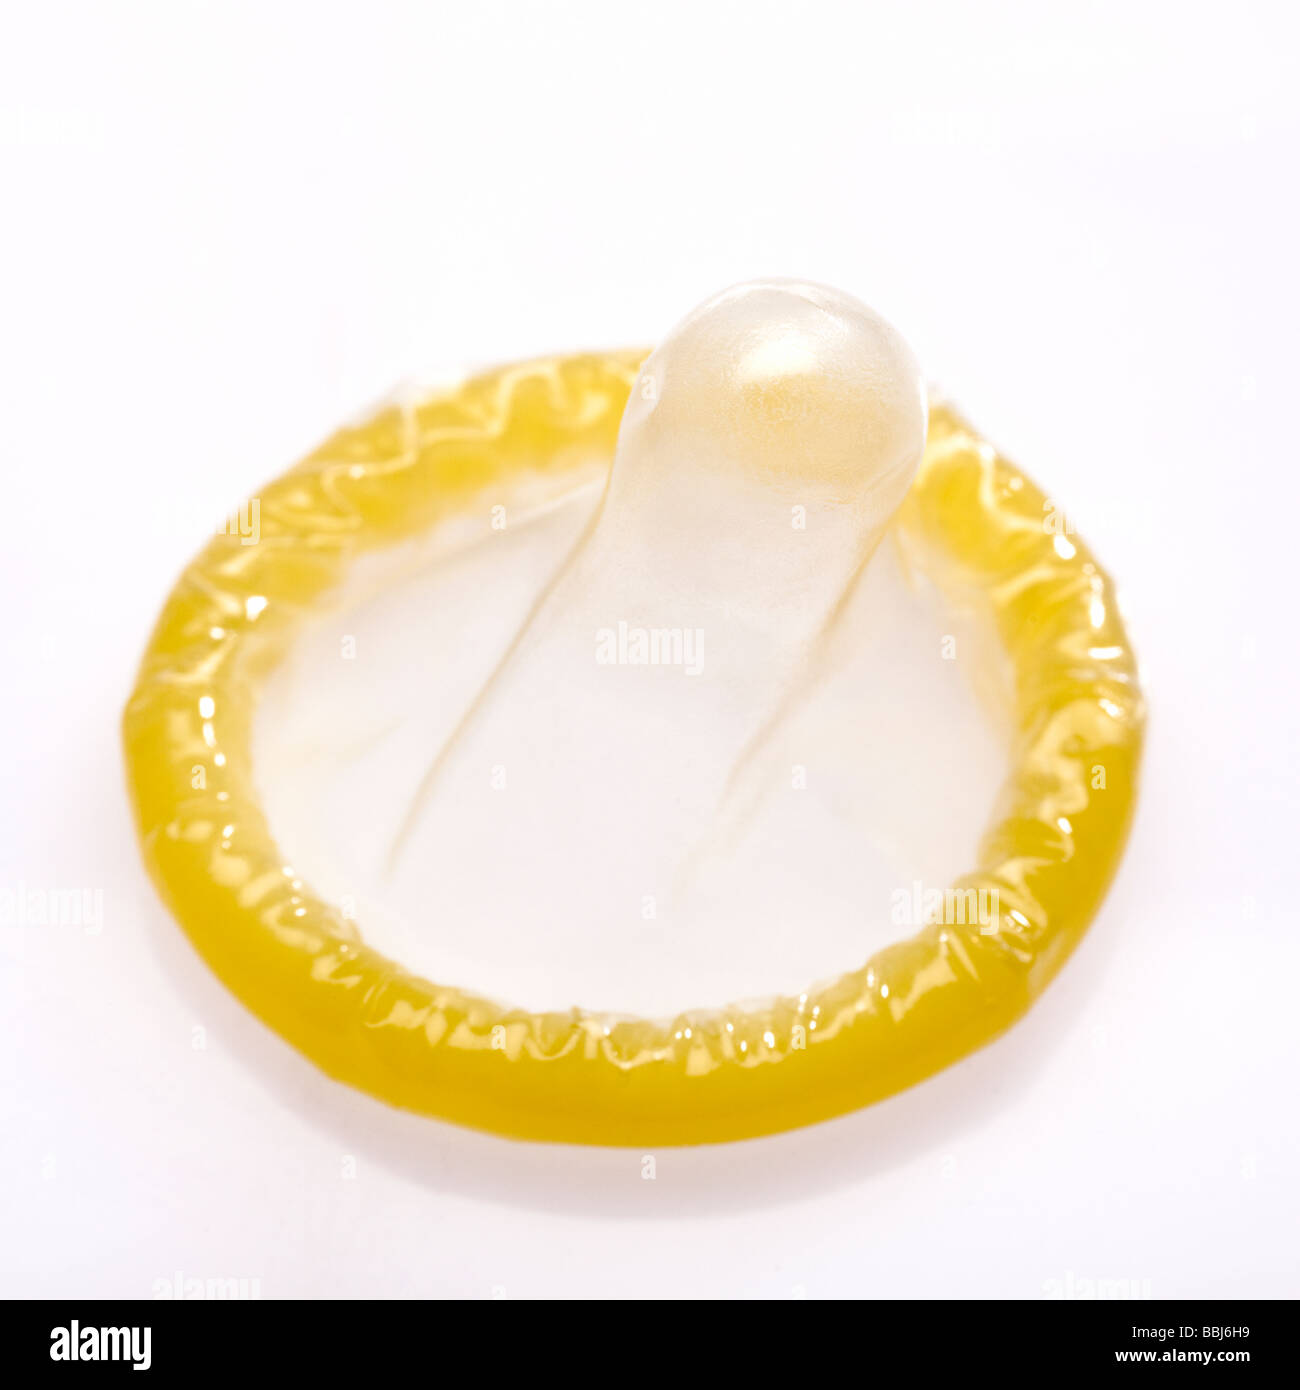 Condom on white Stock Photo